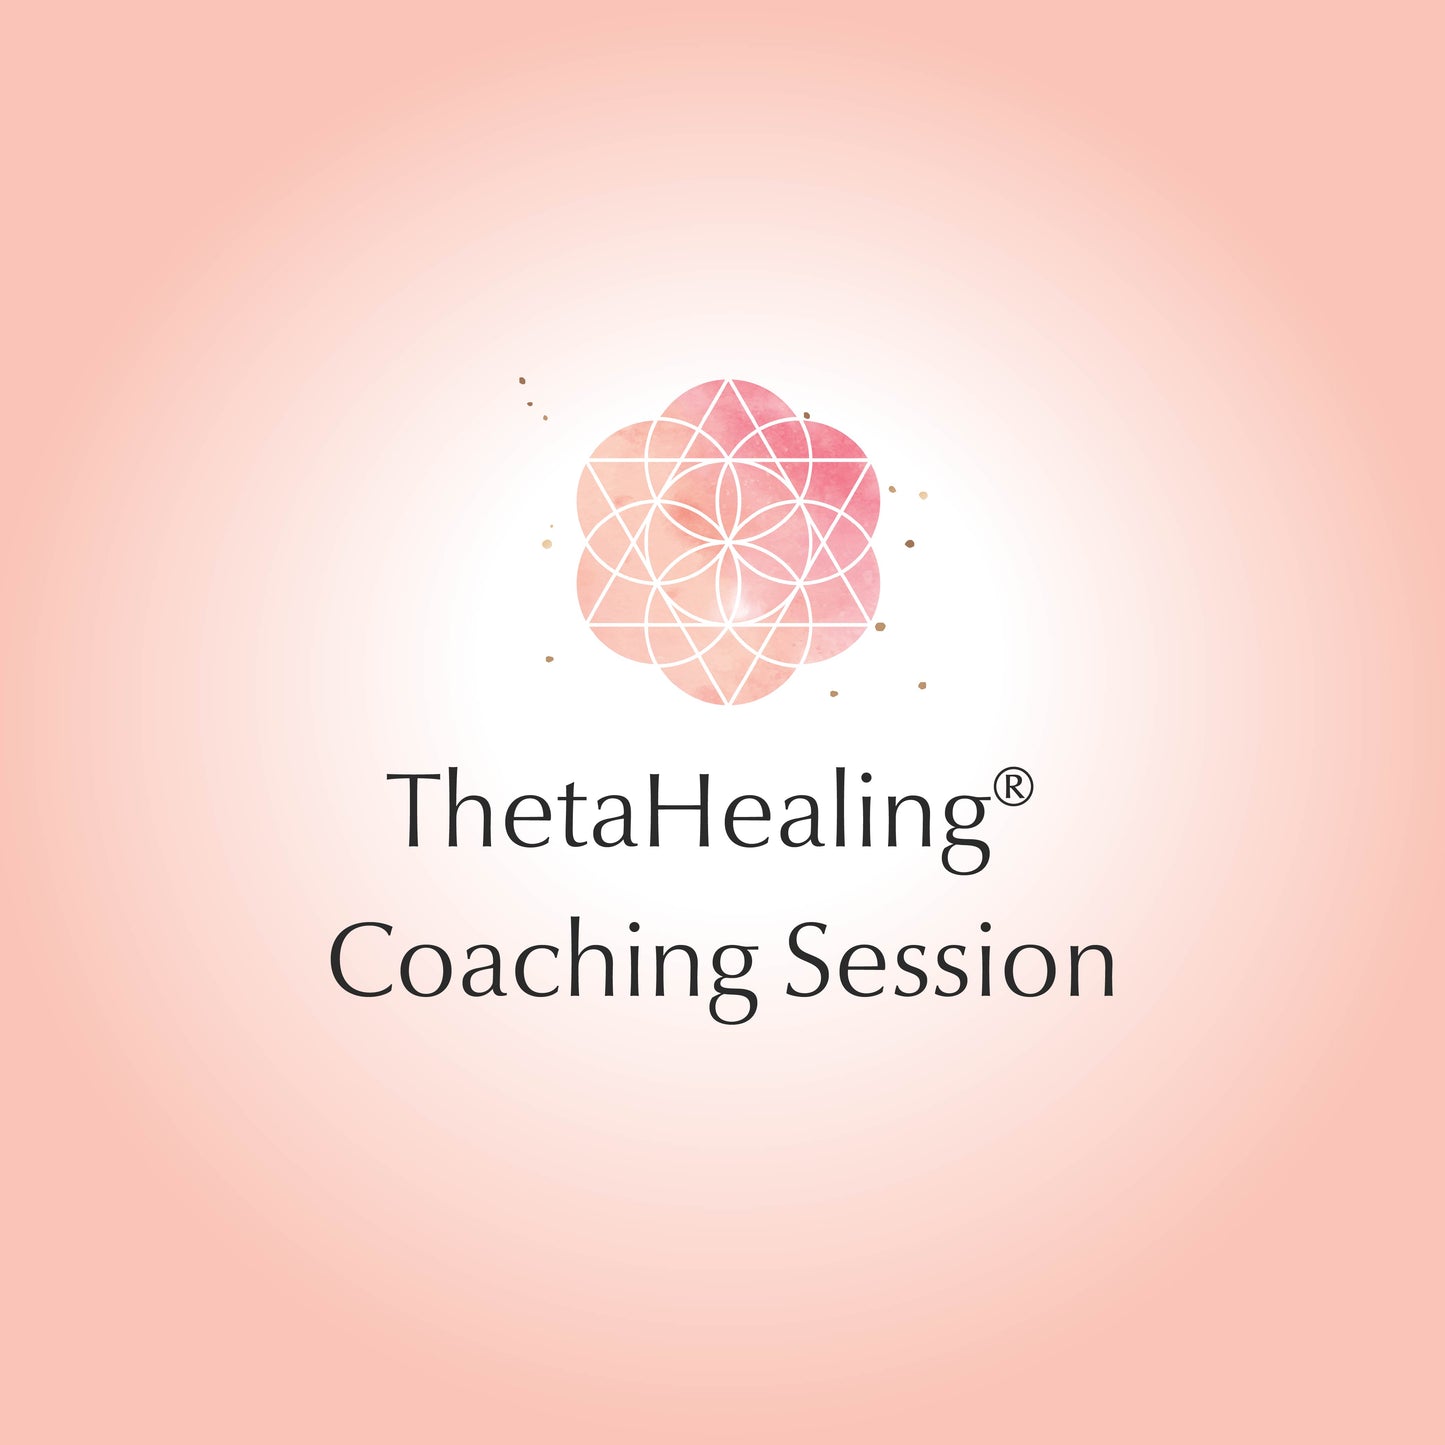 ThetaHealing® Coaching Session